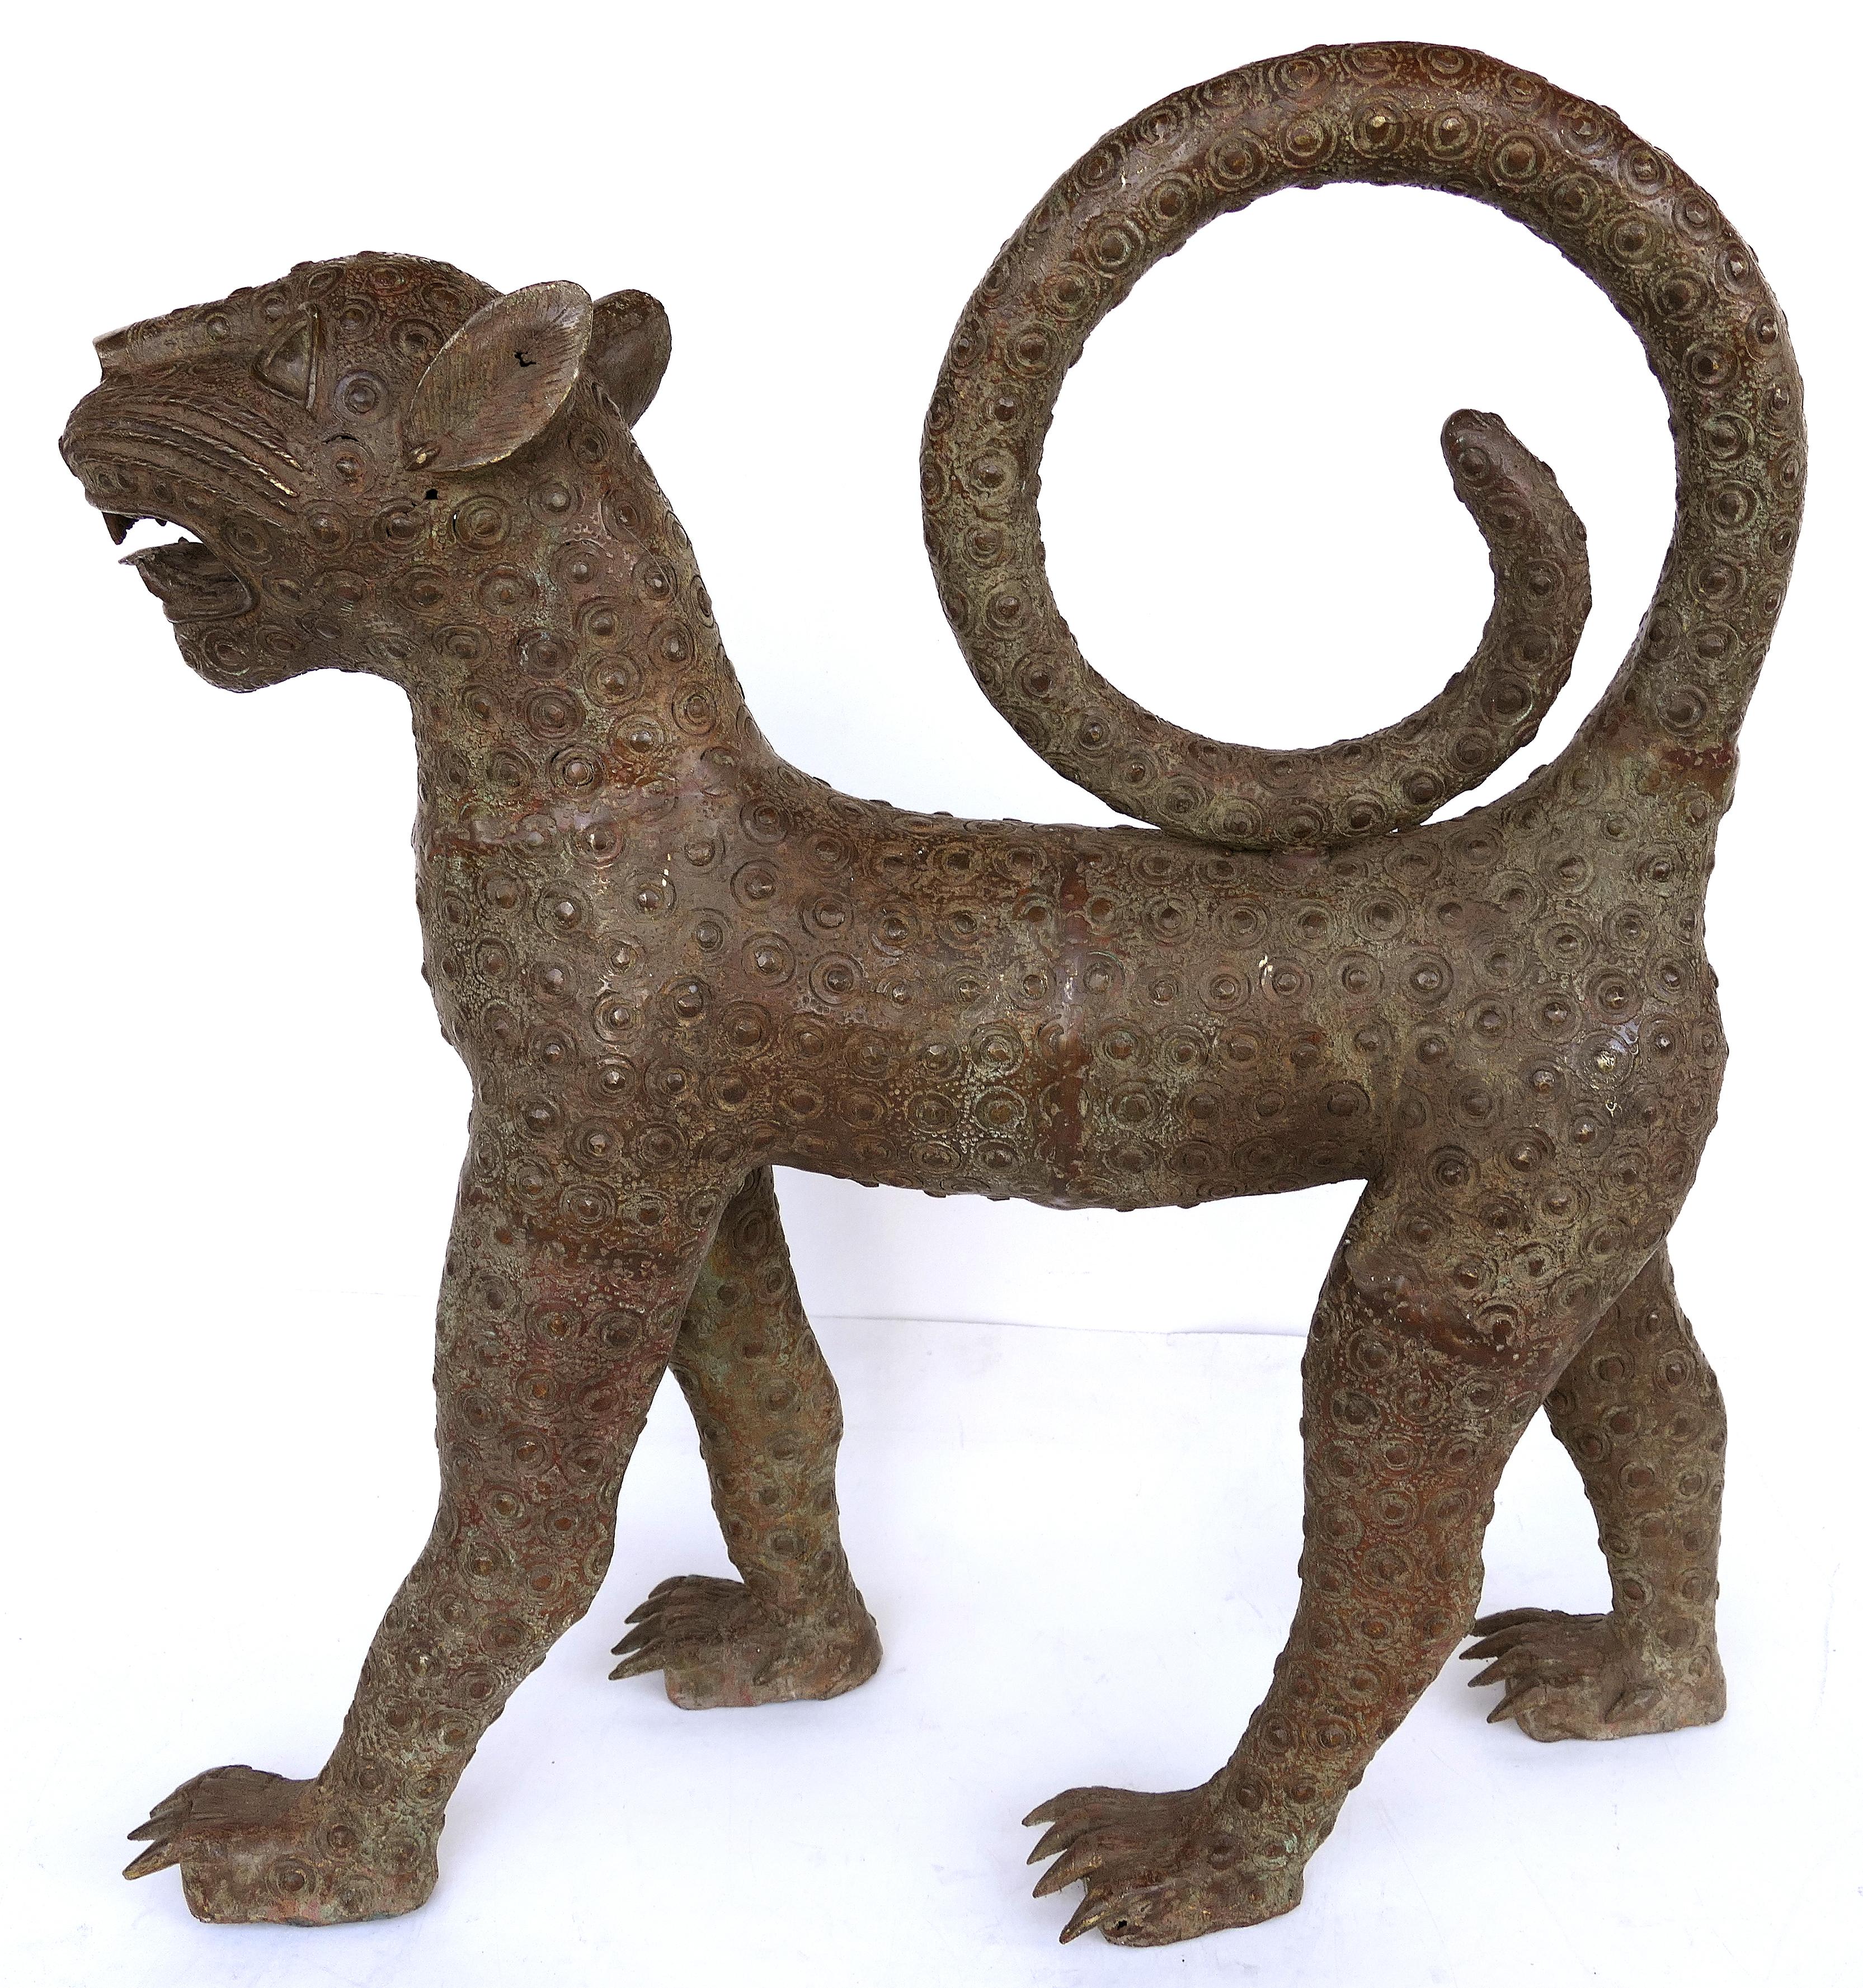 Sculptures en bronze de léopards du Bénin (Nigeria) datant du milieu du 20e siècle

Nous proposons à la vente une paire de copies de sculptures figuratives modernes en bronze du milieu du 20e siècle représentant des léopards du Bénin (aujourd'hui